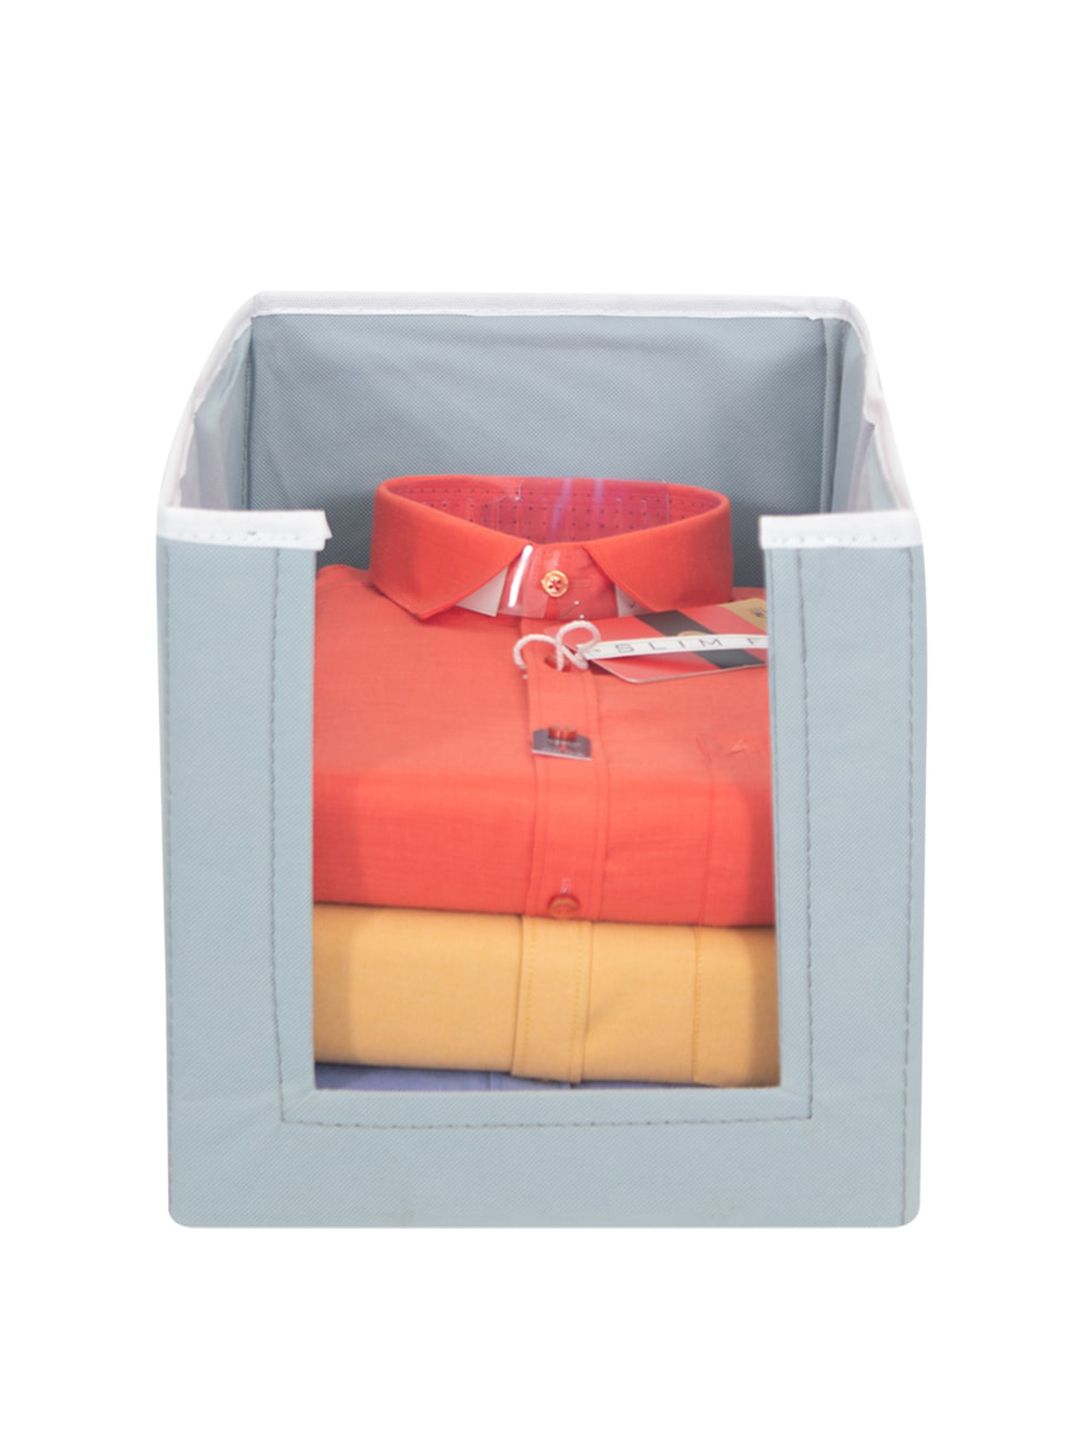 prettykrafts Grey Solid Shirt Stacker Wardrobe Organizer Price in India